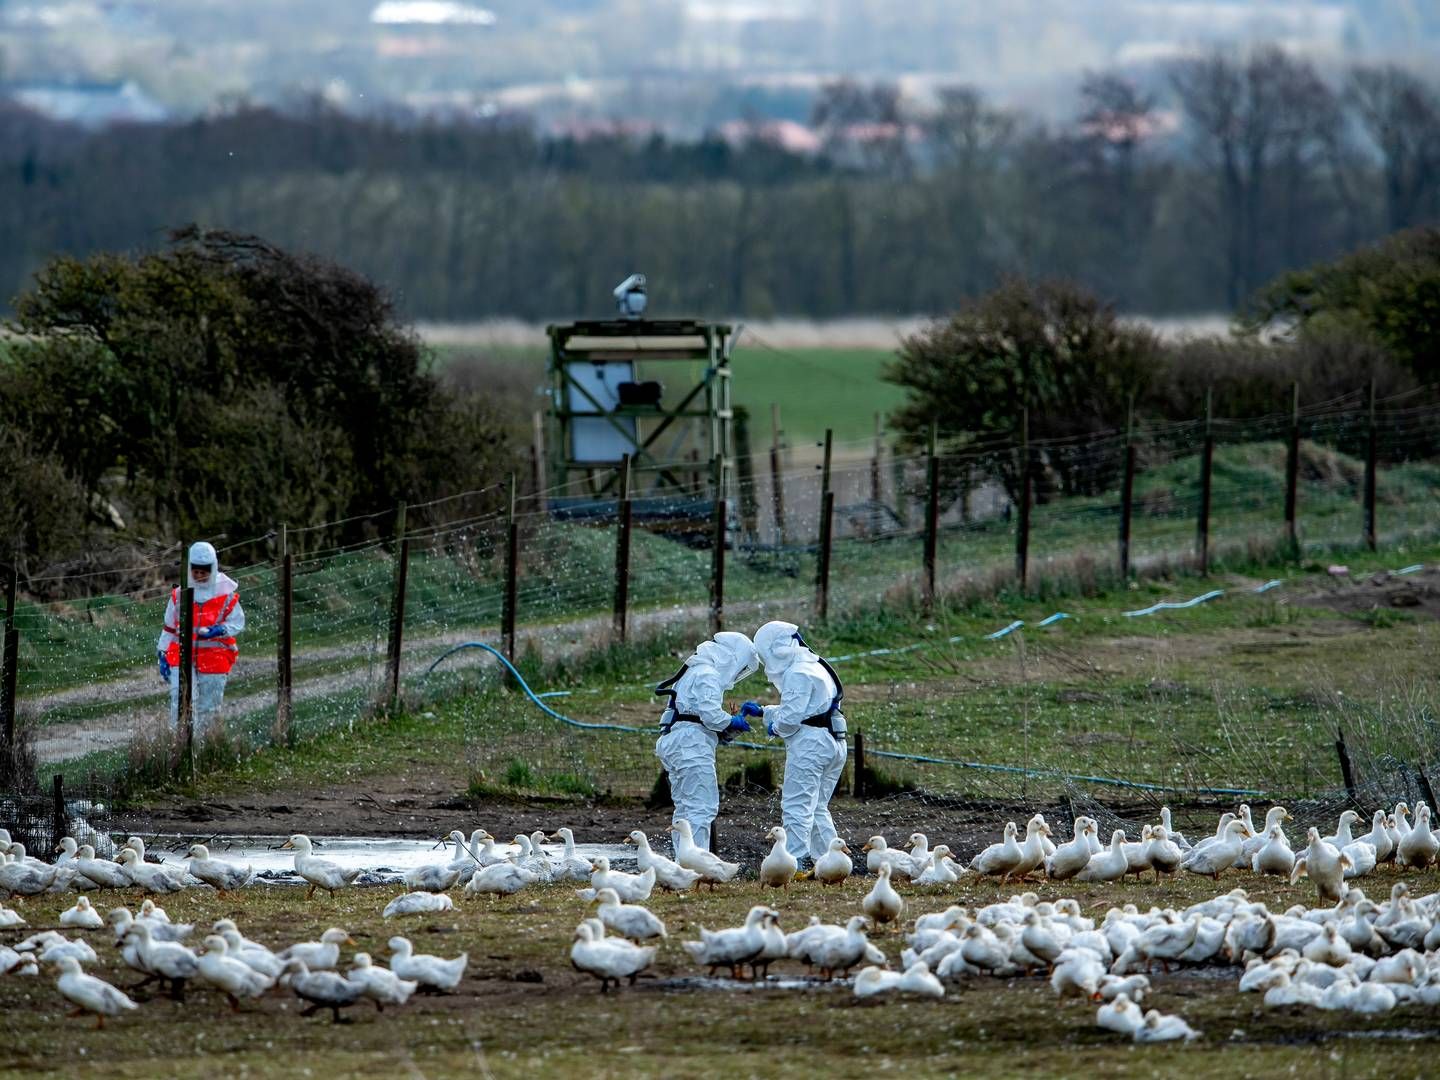 Det giver anledning til bekymring, at fugleinfluenza har spredt sig til kvæg og mennesker. | Foto: René Schütze